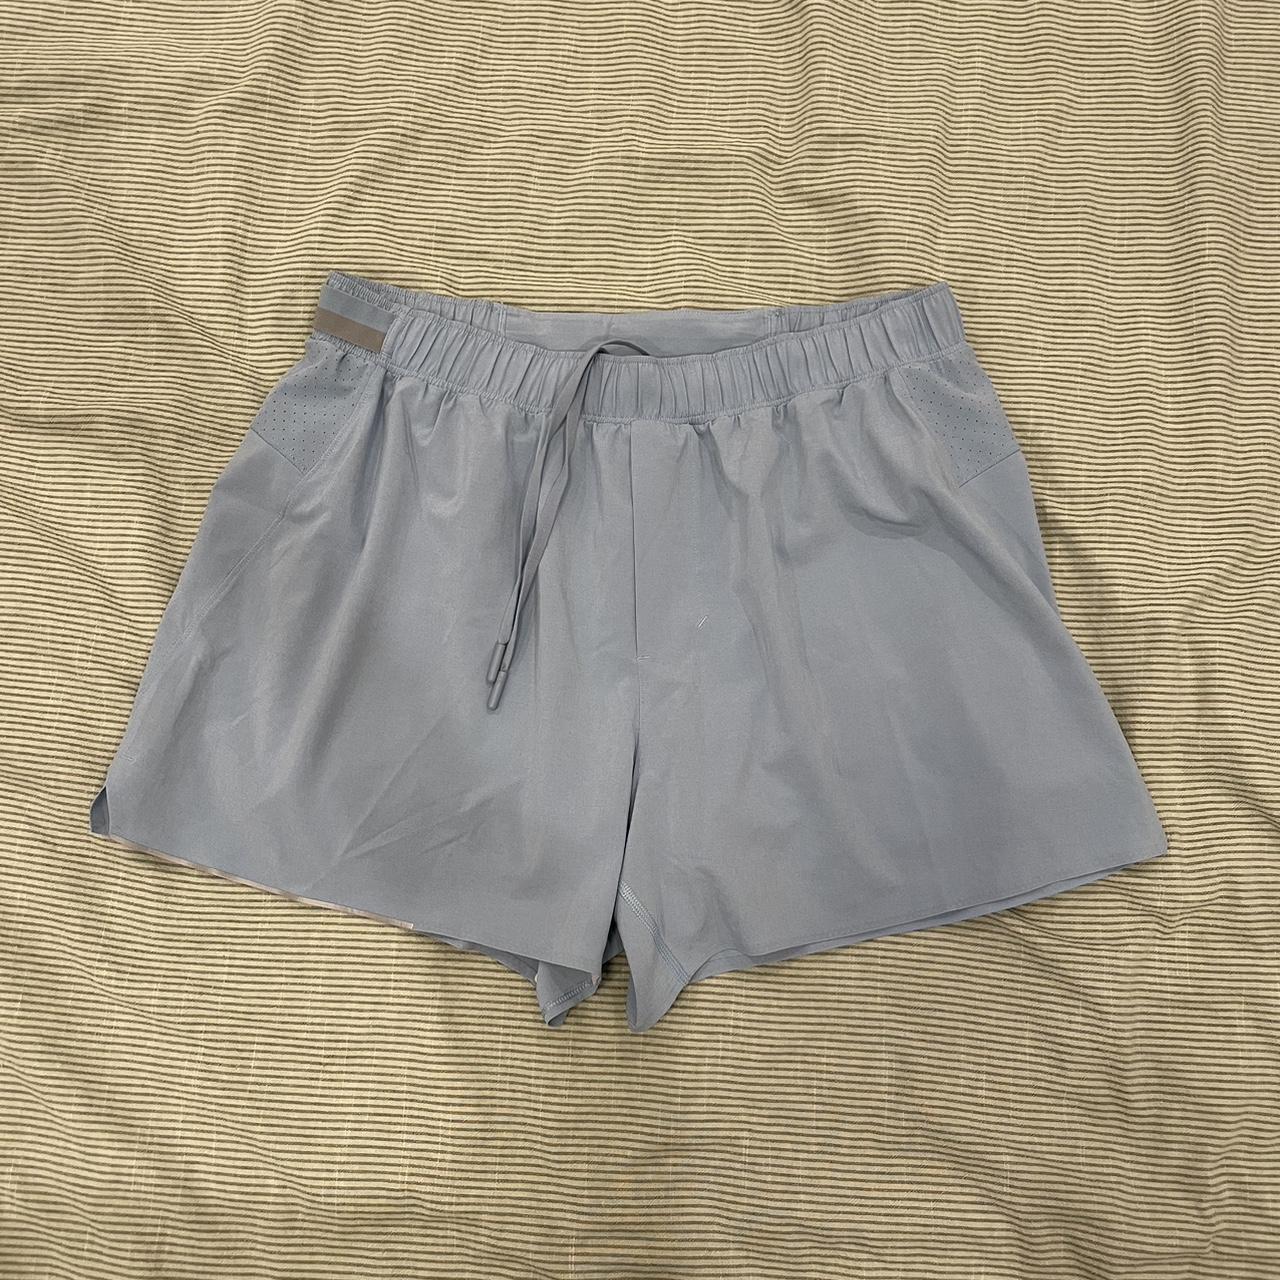 Lululemon Men's Blue Shorts